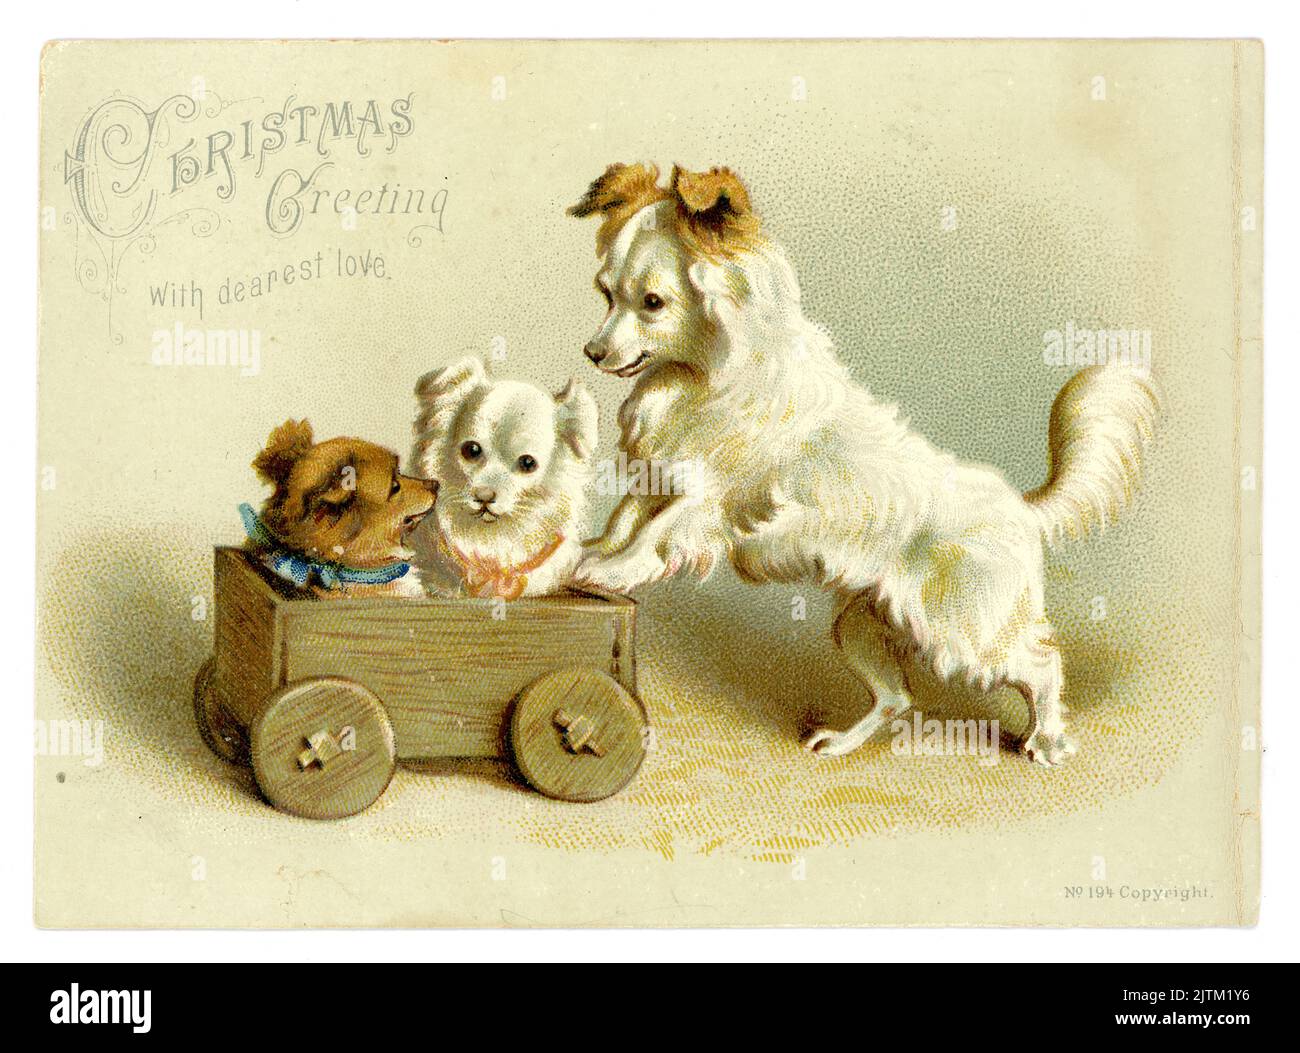 Originale e affascinante biglietto d'auguri vittoriano di un simpatico cane terrier che spinge due cuccioli in un camion giocattolo di legno o in un carrello, saluto di Natale con amore più caro, anni '1890 circa, Regno Unito Foto Stock